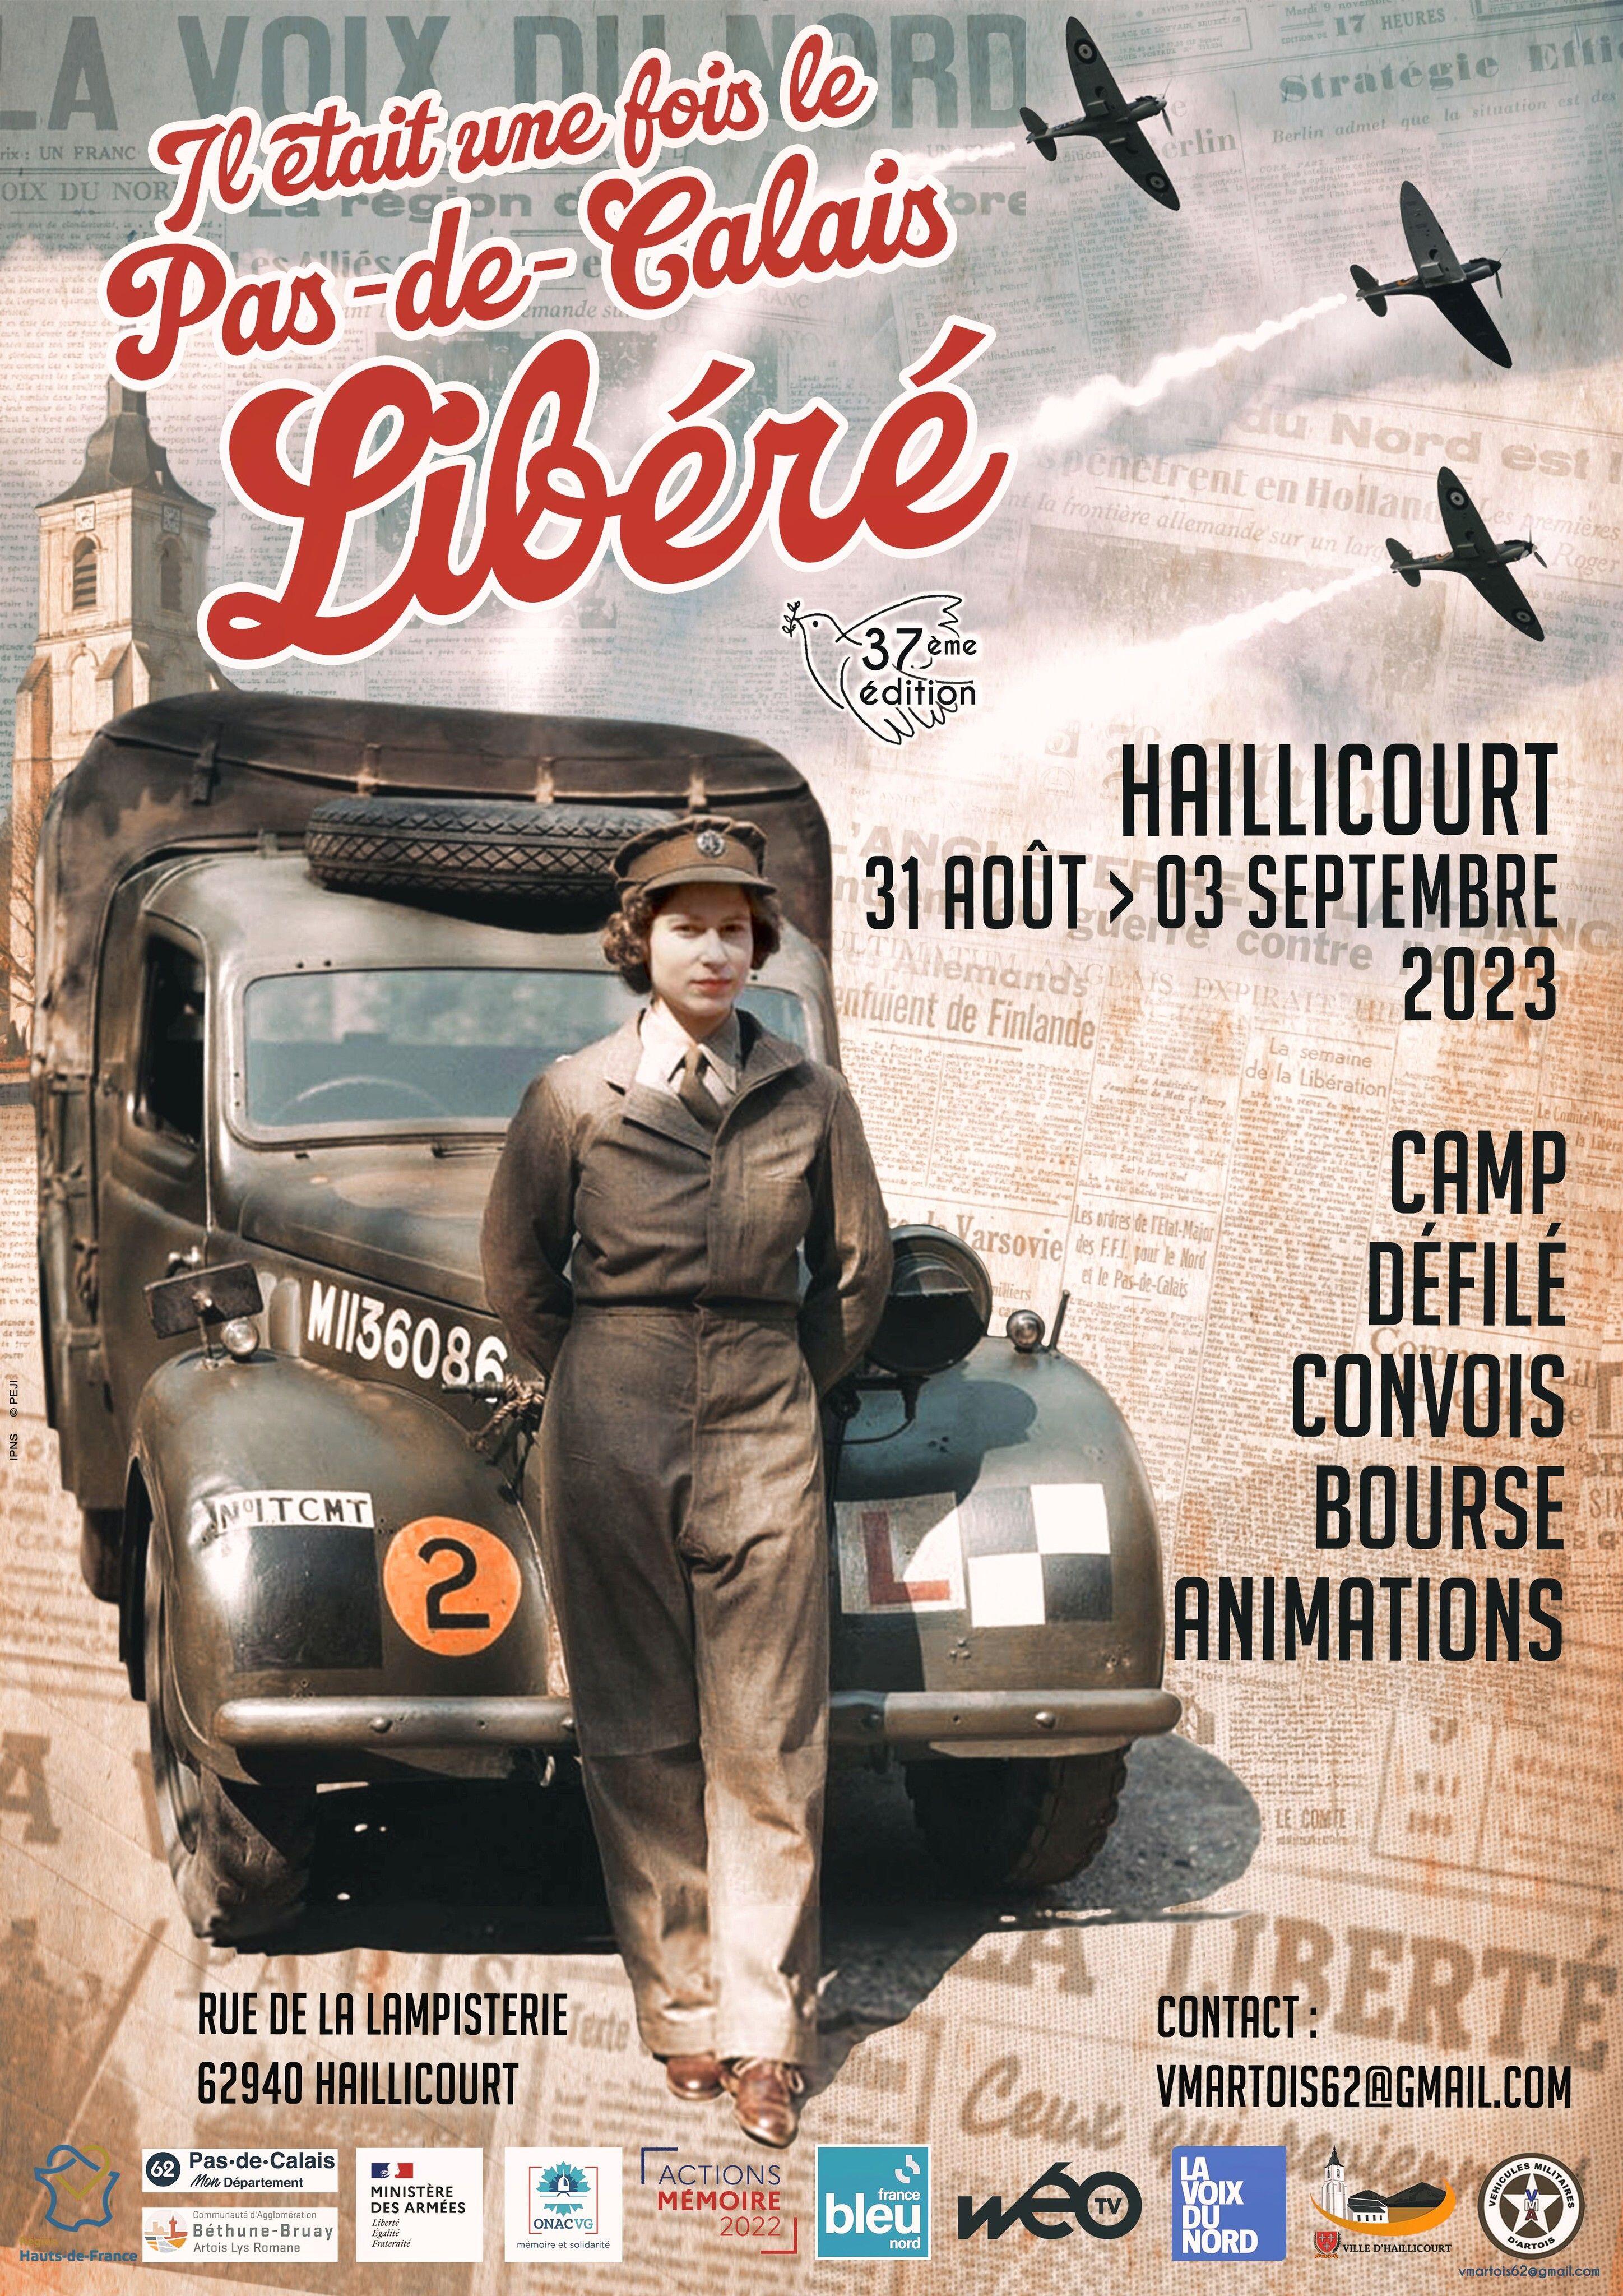 Haillicourt : Pas-de-Calais Libéré est de retour pour sa 37ème édition !